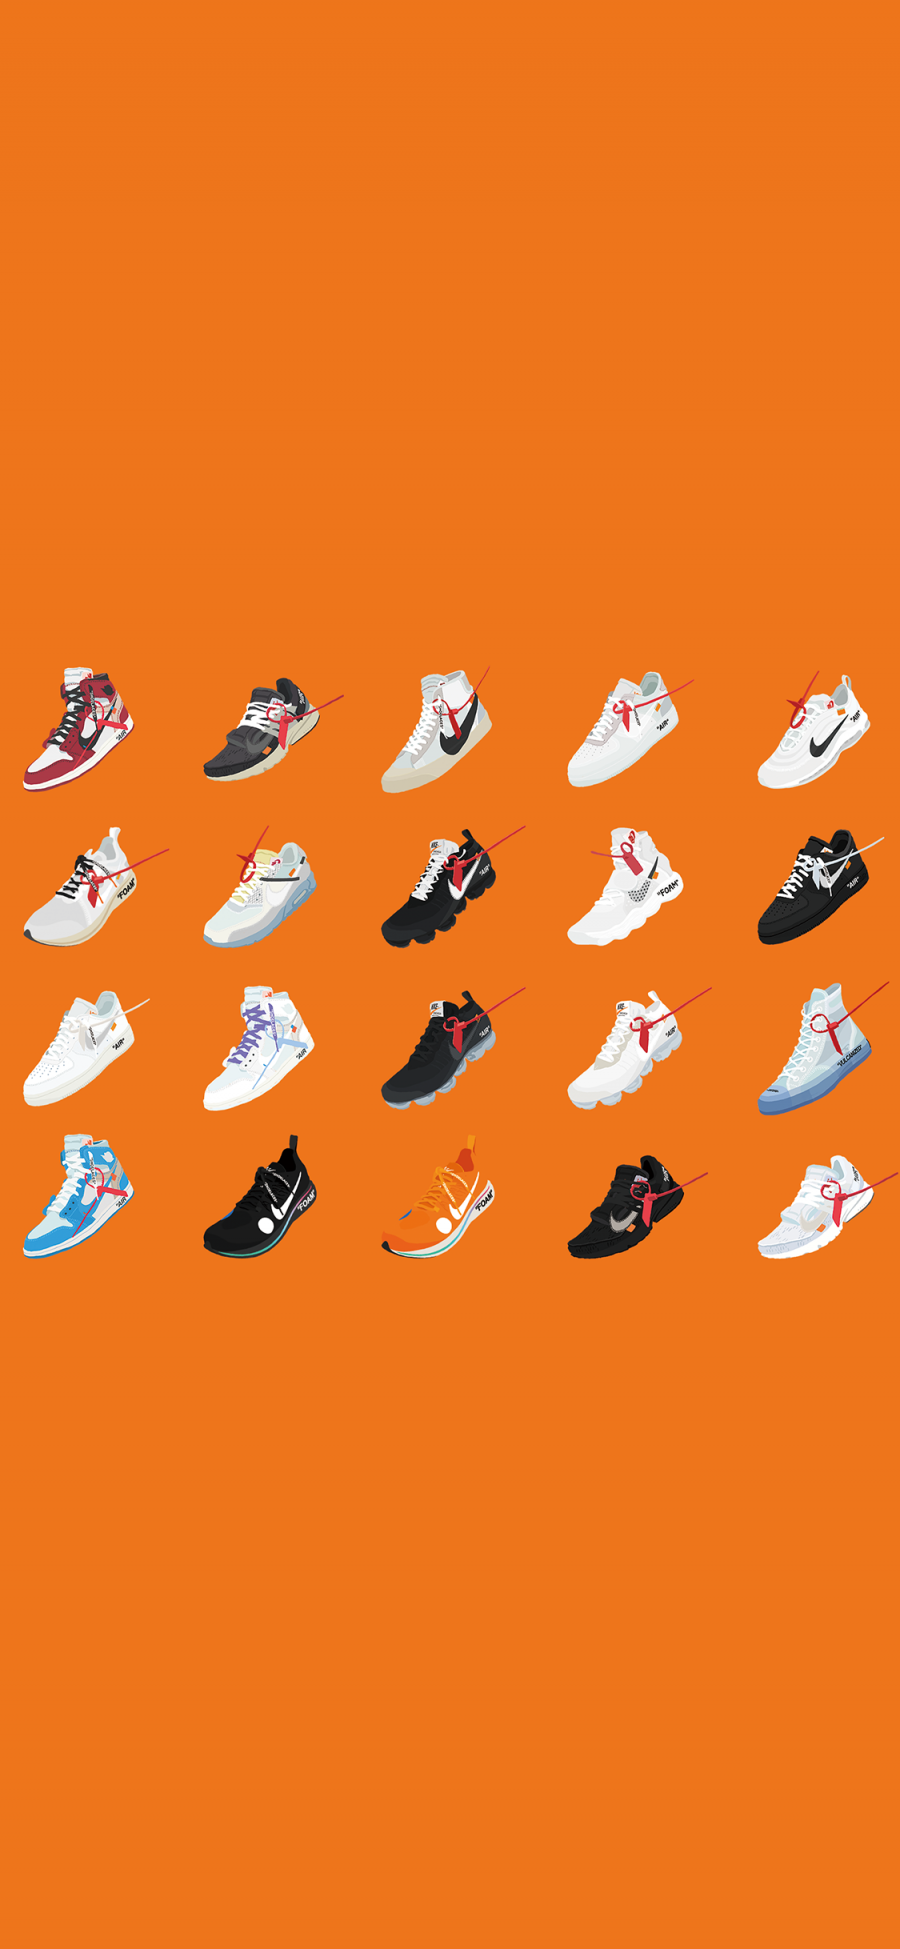 [2436×1125]橙色背景 插图 Nike 品牌 鞋子 苹果手机动漫壁纸图片